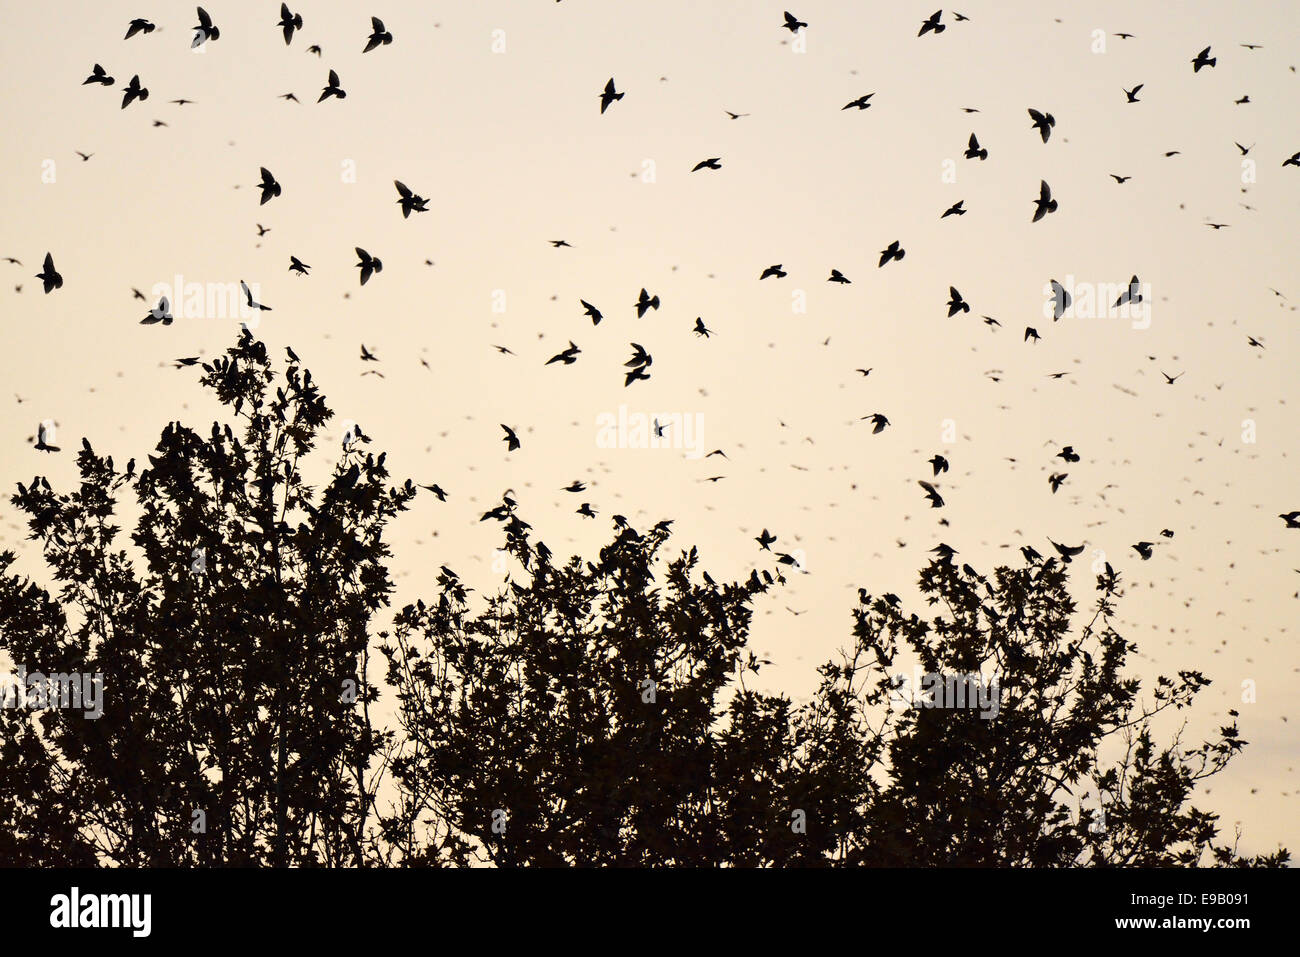 Bandada de pájaros estorninos (Sturnus vulgaris) que rodean su árbol de dormir, Italia Foto de stock